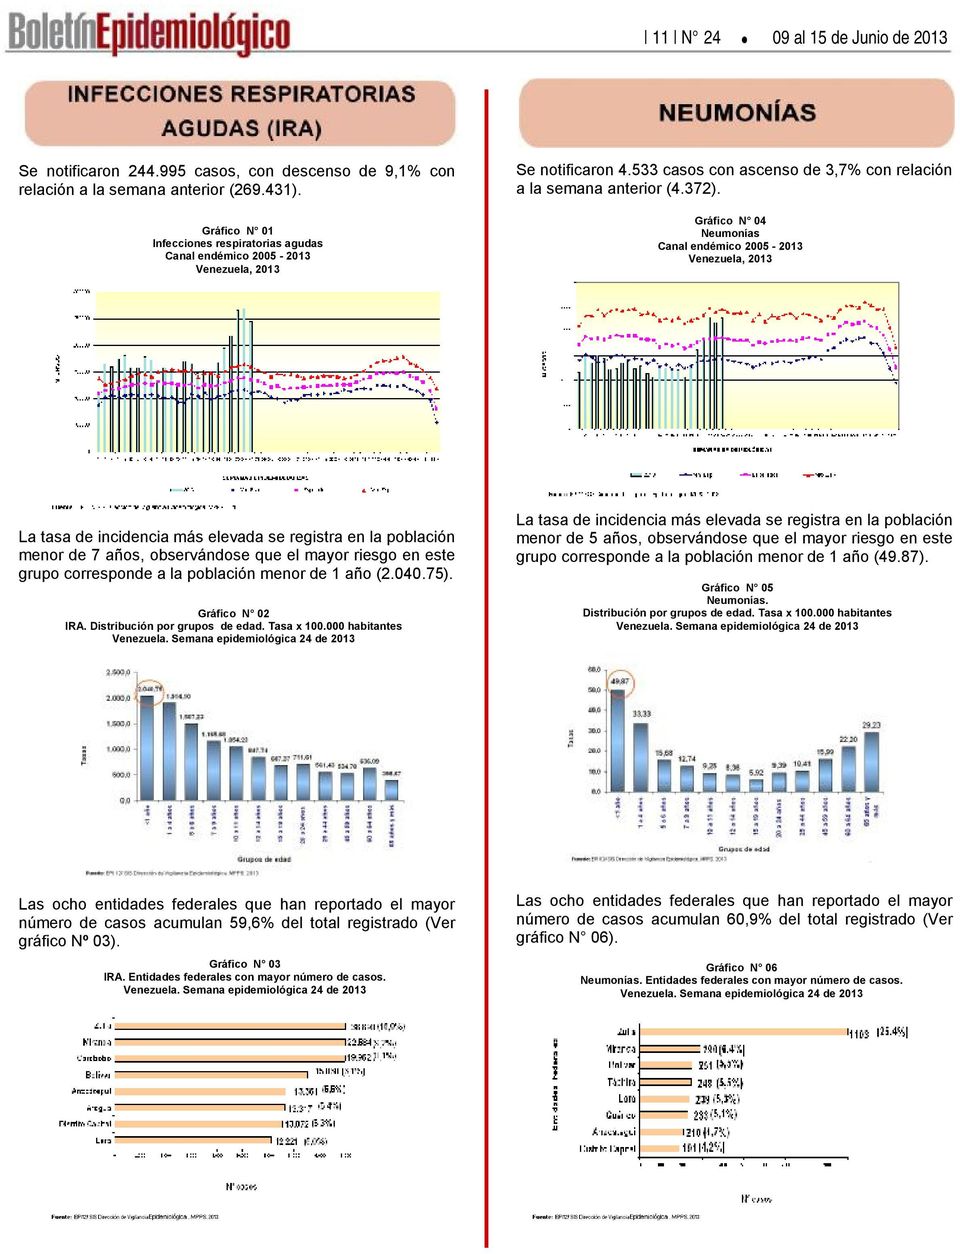 Gráfico N 4 Neumonías Canal endémico 25-213 Venezuela, 213 La tasa de incidencia más elevada se registra en la población menor de 7 años, observándose que el mayor riesgo en este grupo corresponde a